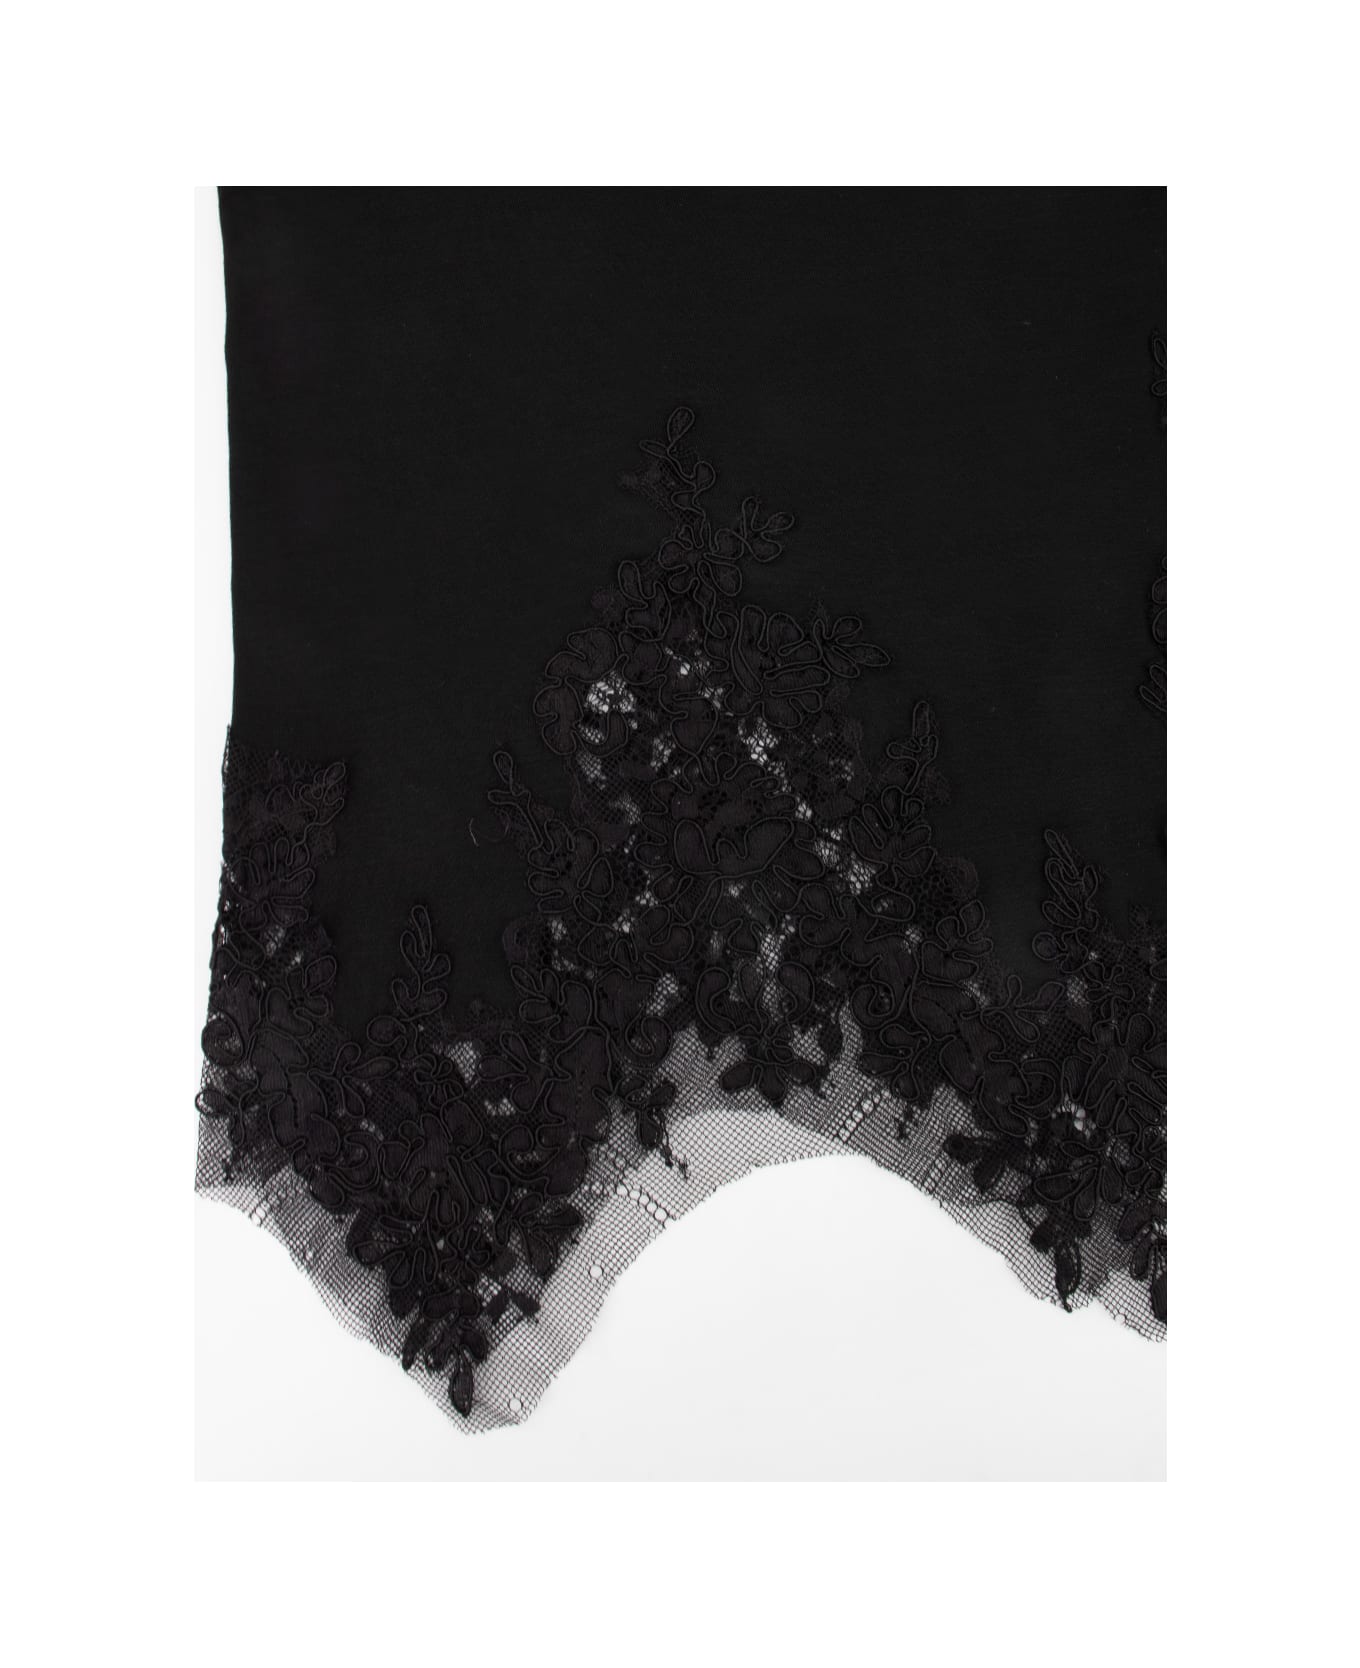 Ermanno Scervino Sweater - BLACK